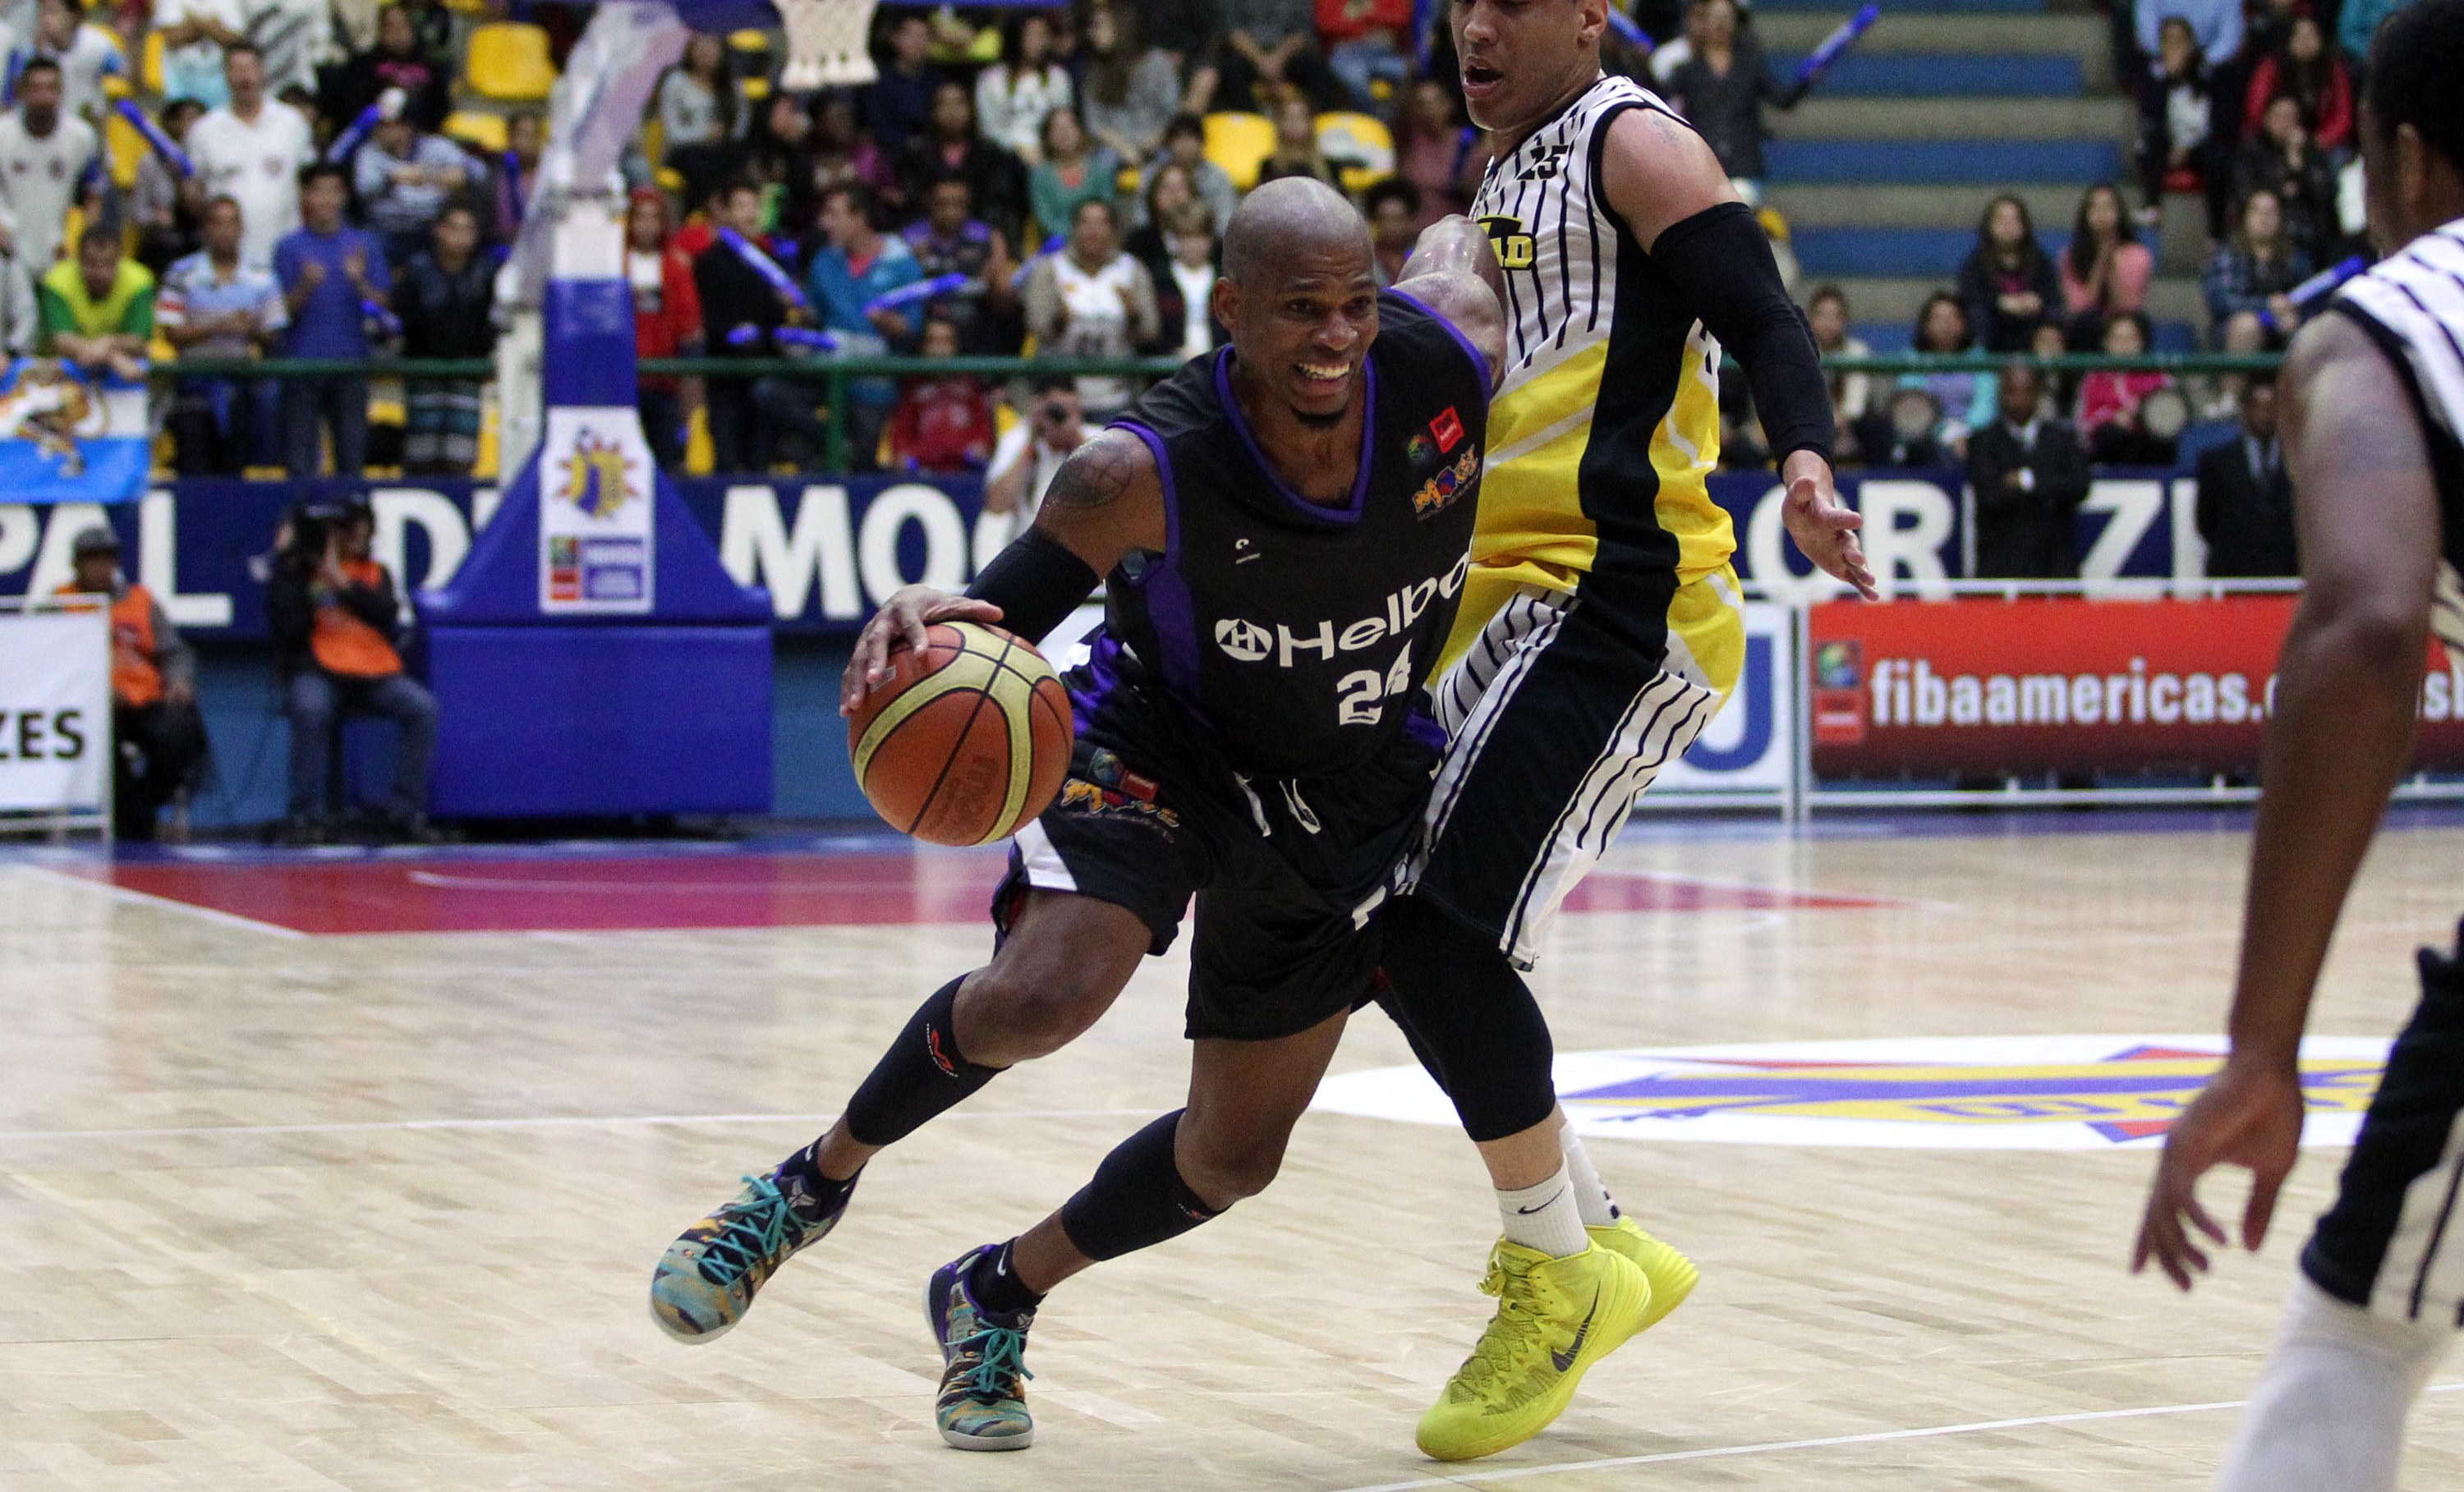 Norte-americano Shamell é o principal pontuador do Mogi na Liga Sul-Americana (FIBA Américas/Divulgação)